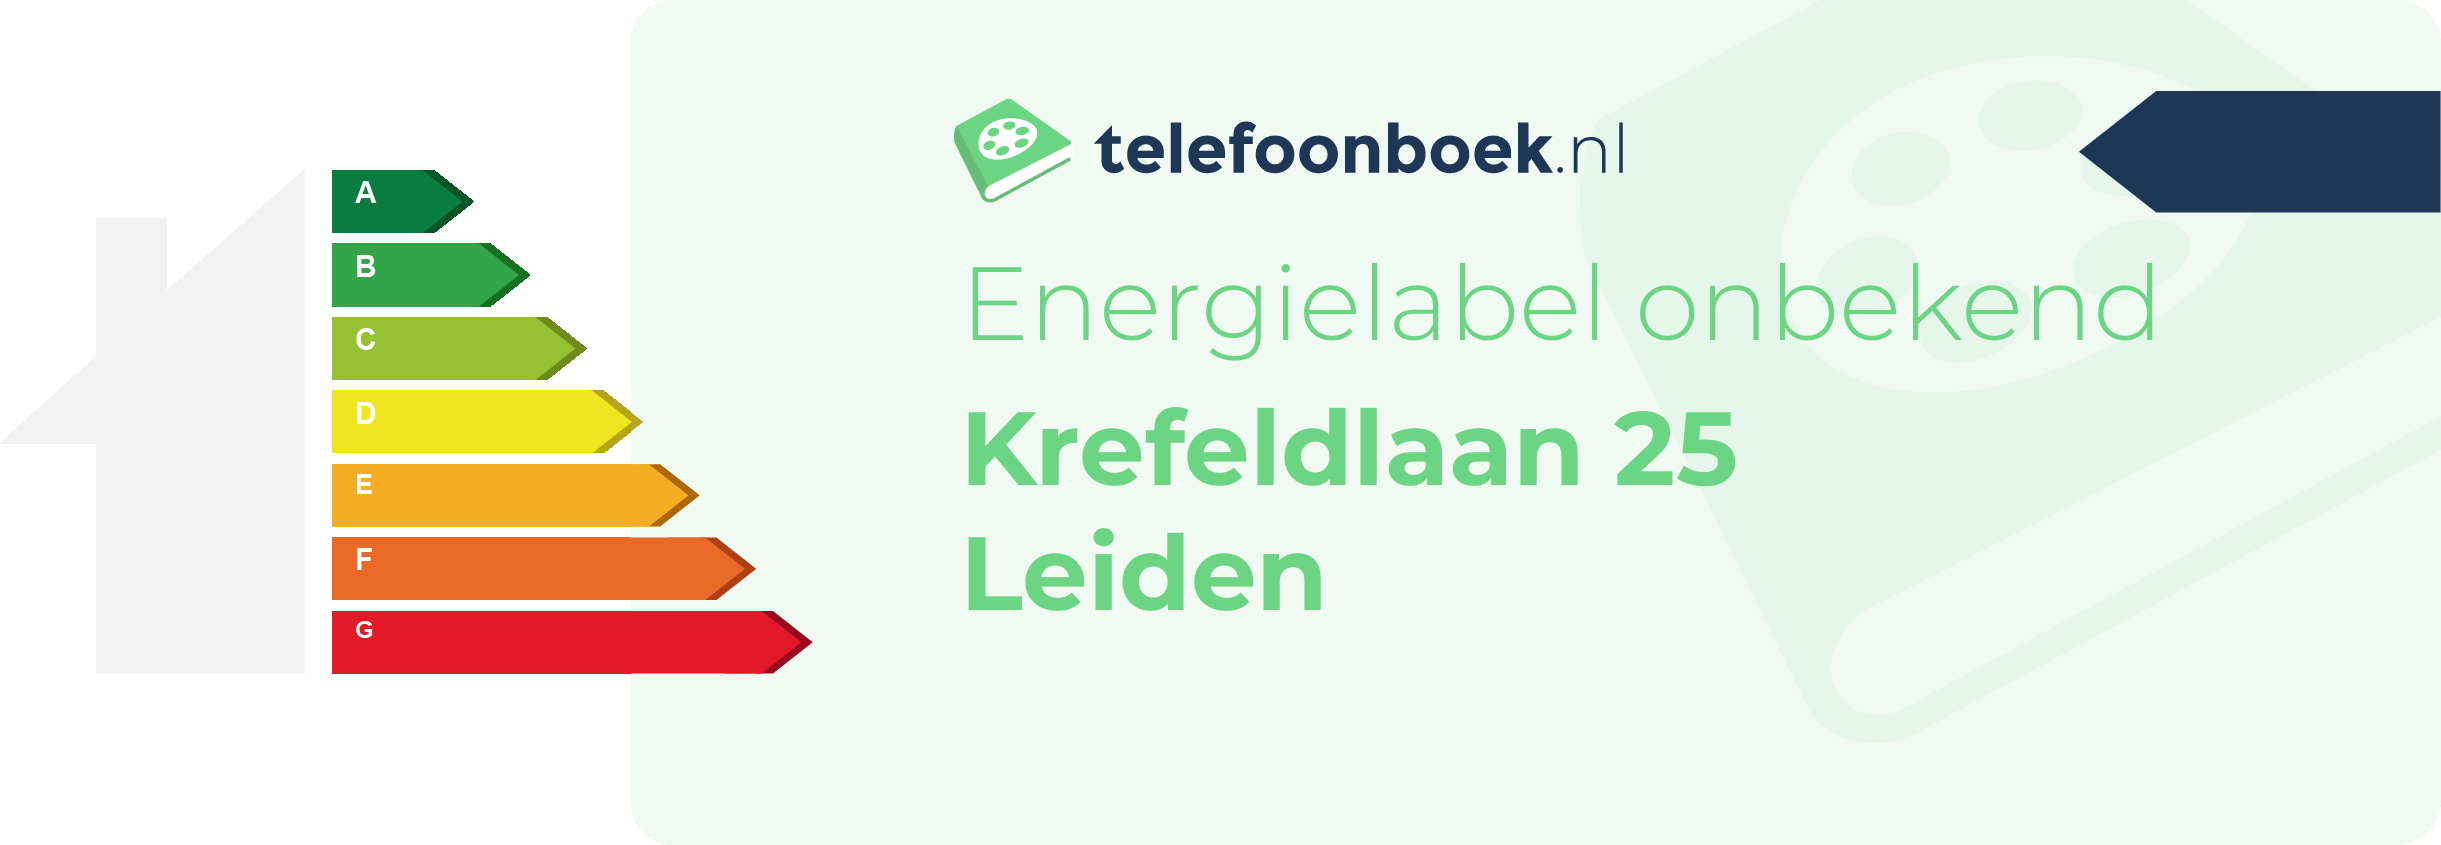 Energielabel Krefeldlaan 25 Leiden